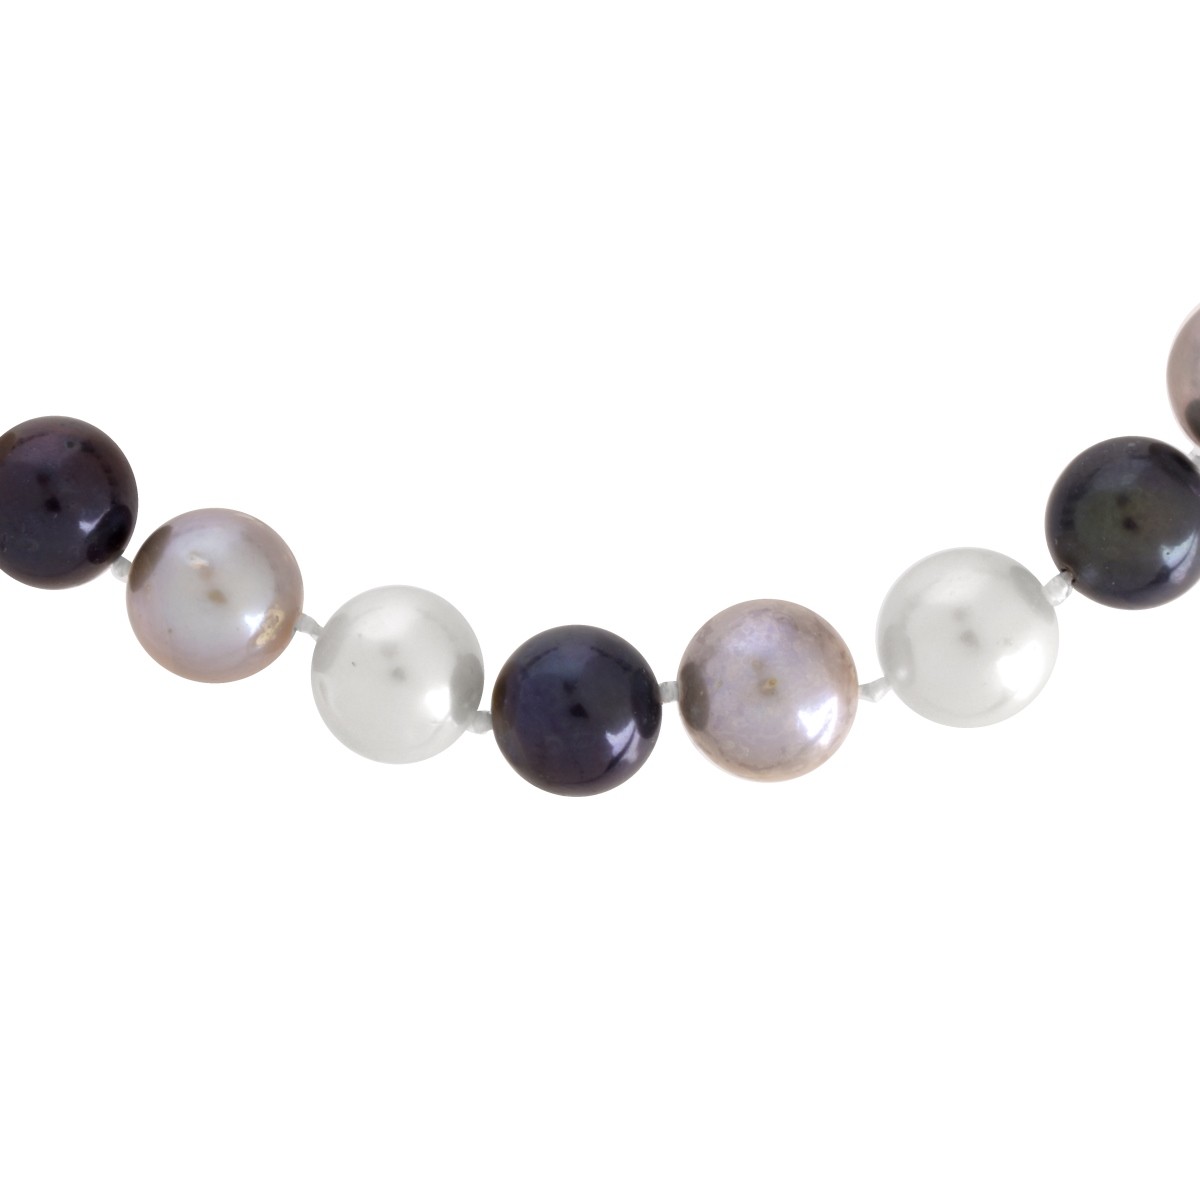 Multi Color Pearl Necklace